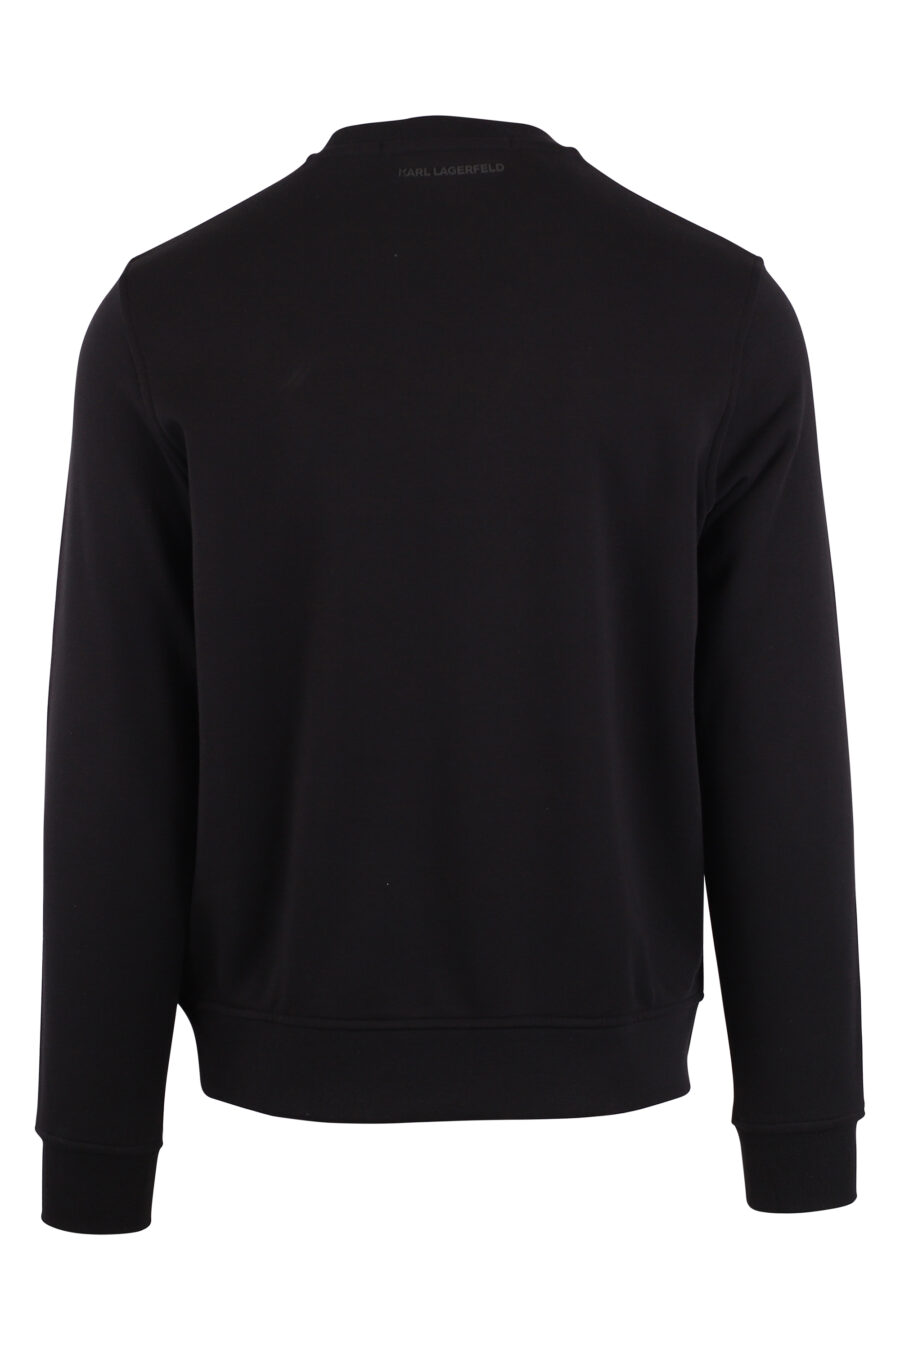 Schwarzes Sweatshirt mit orangem Maxilogo "rue st guillaume" - IMG 9426